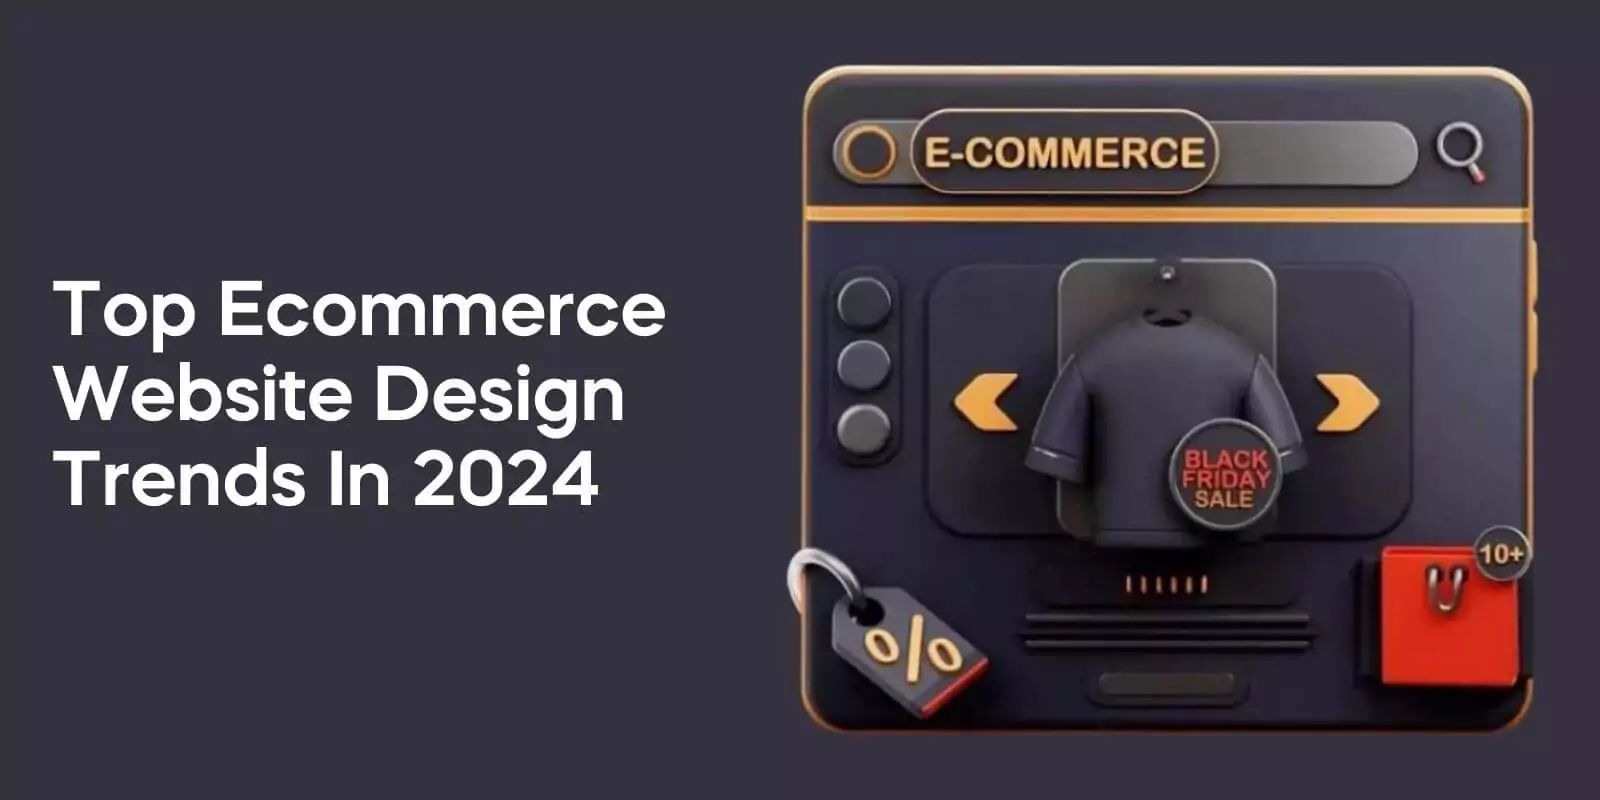 Top Ecommerce Website Design Trends in 2024